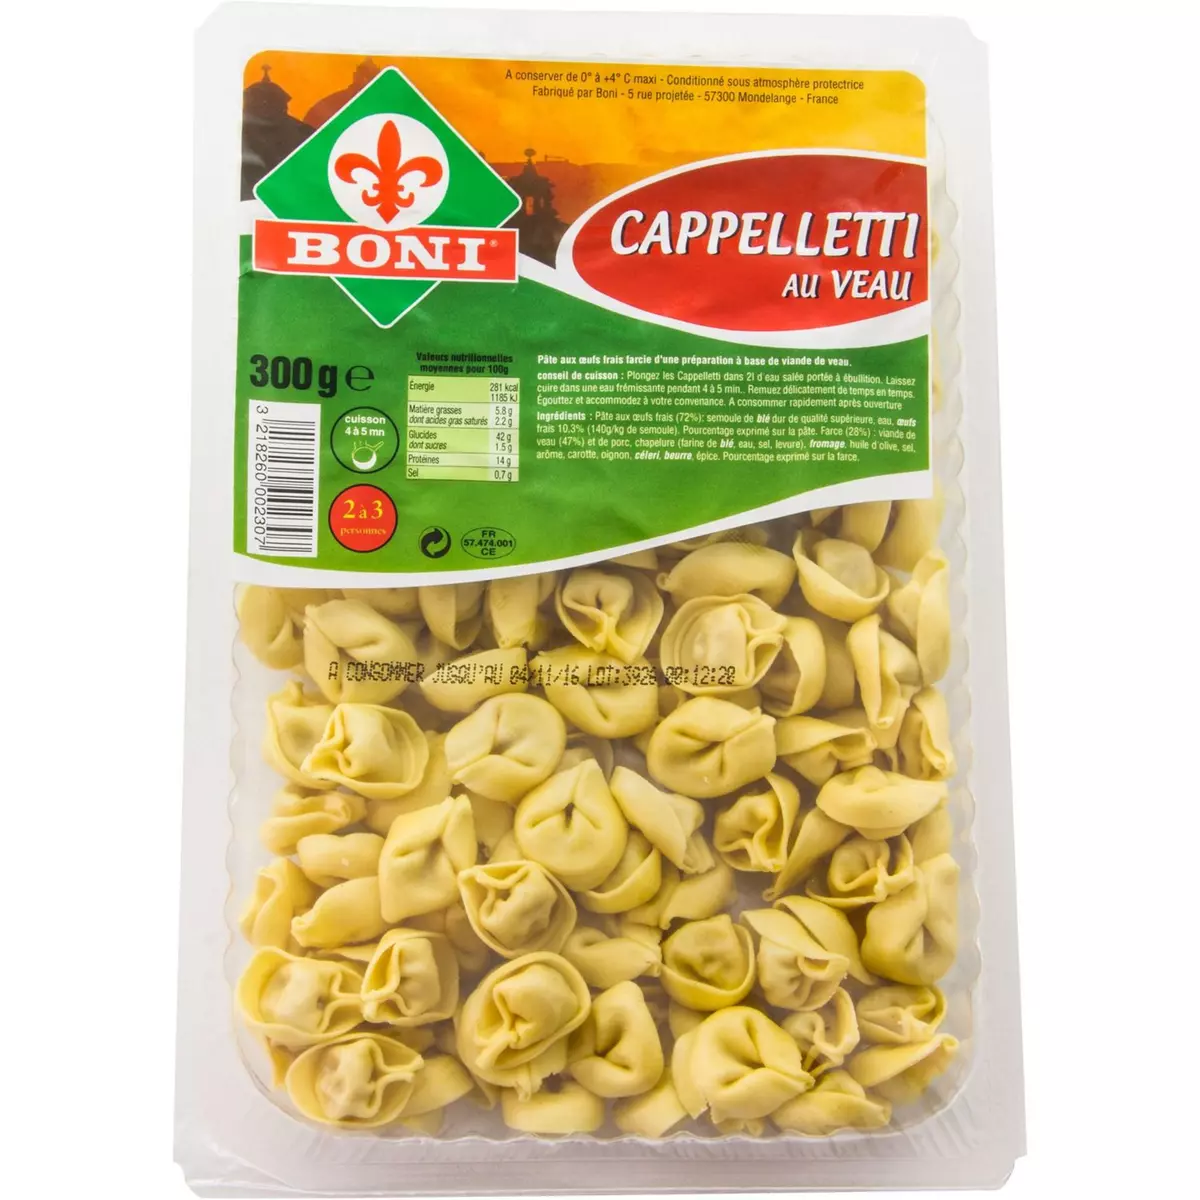 BONI Cappelletti au veau 2-3 portions 300g